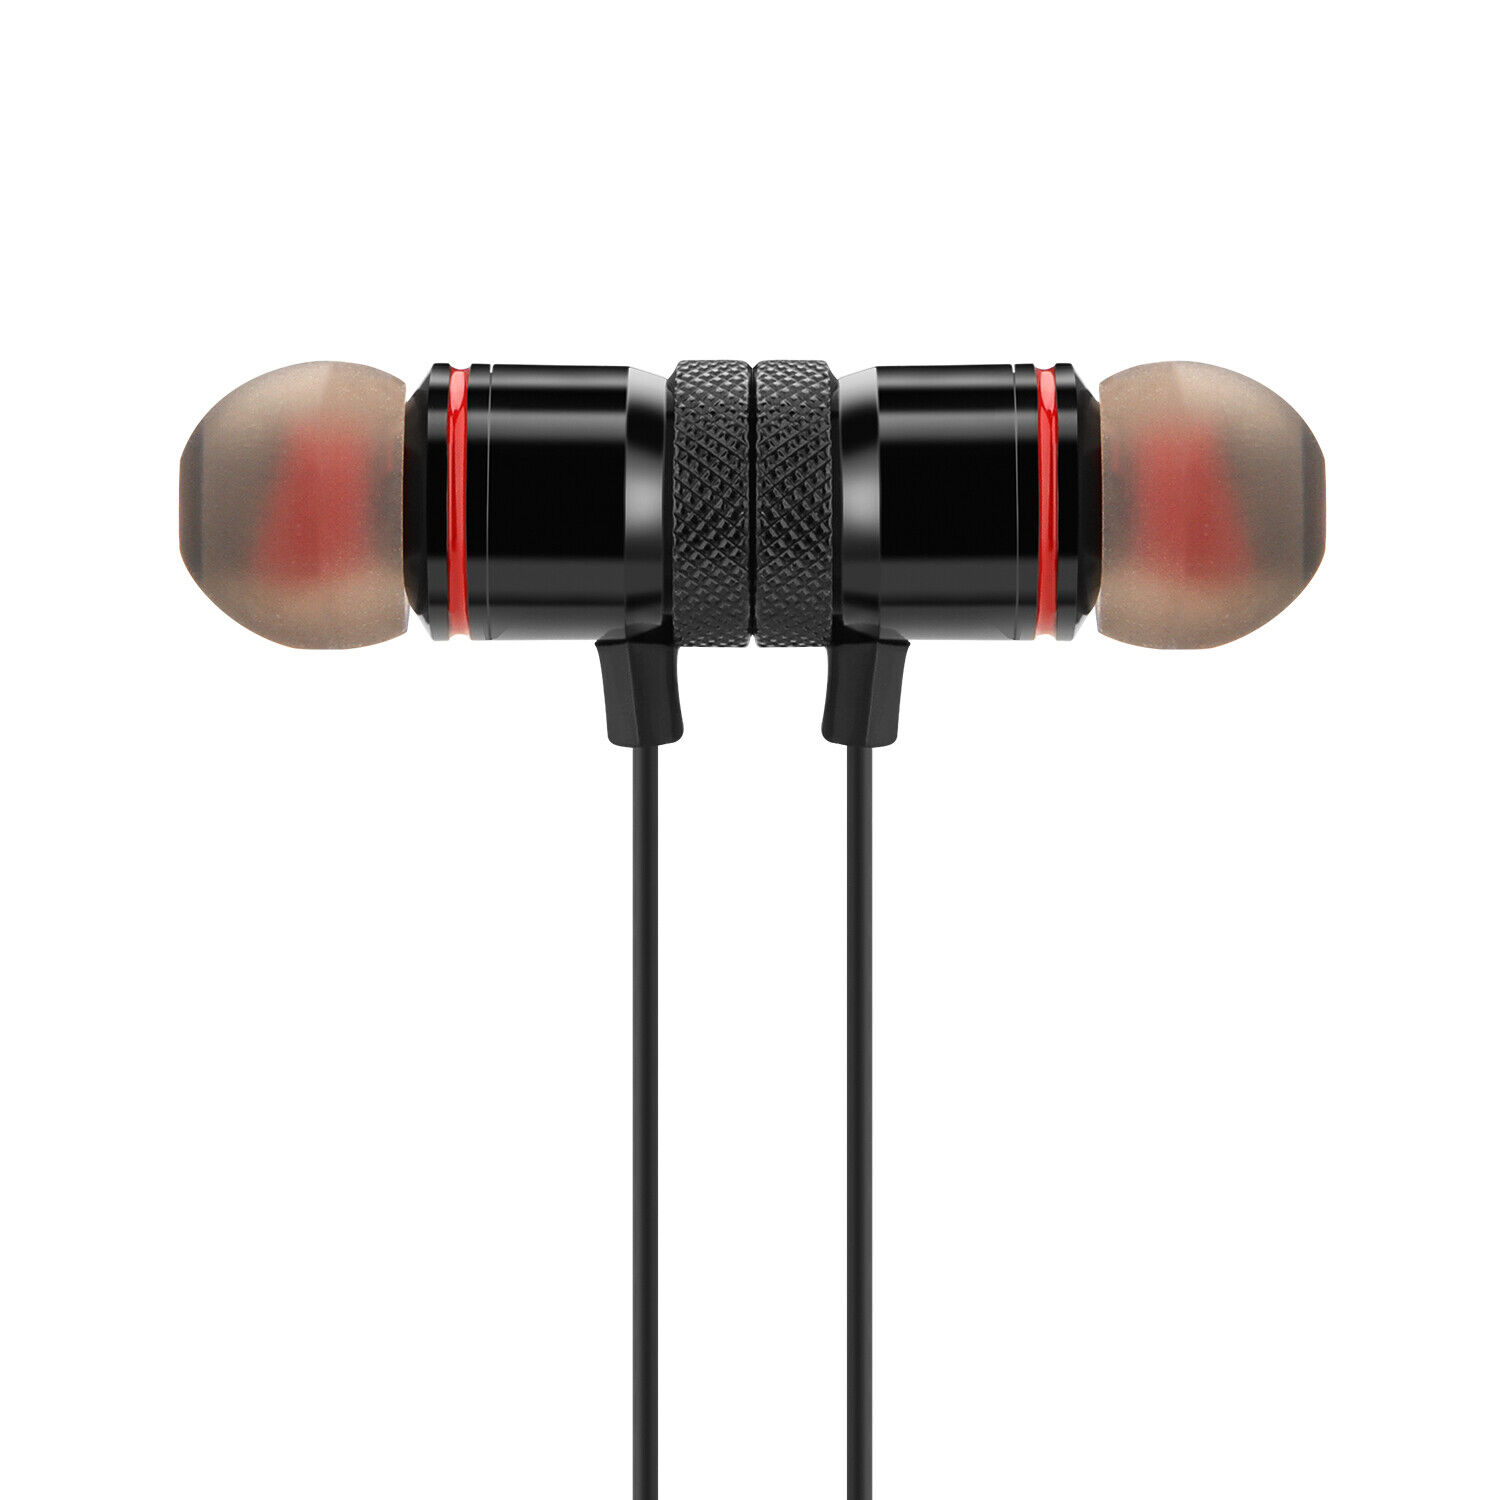 Waterproof Bluetooth Earbuds HD Stereo Sport Wireless Headphones in Ear Headsets Agptek Does Not Apply - фотография #7